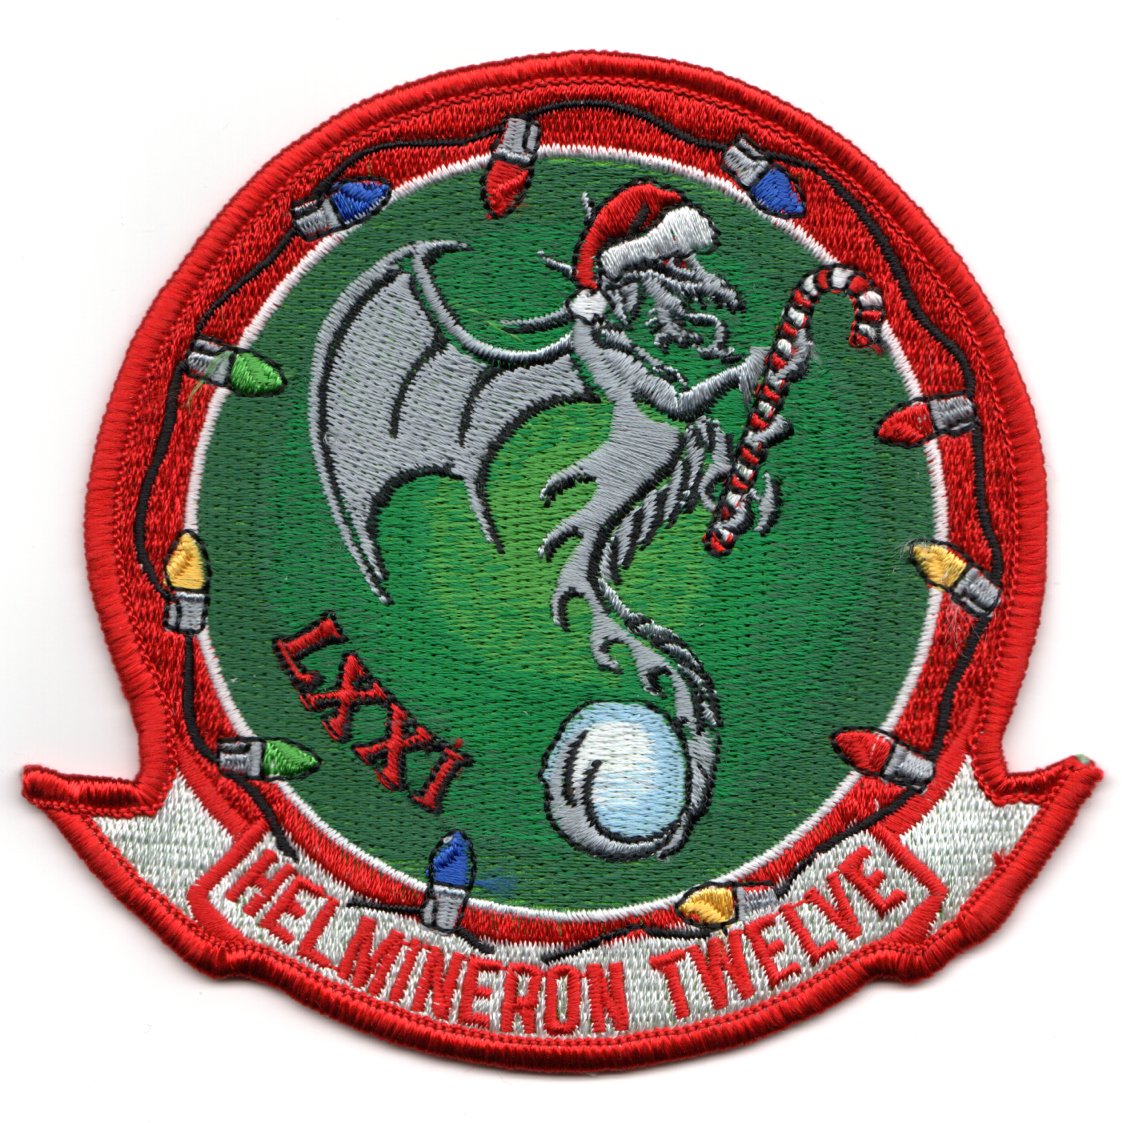 HM-12 Squadron 'Christmas' Patch